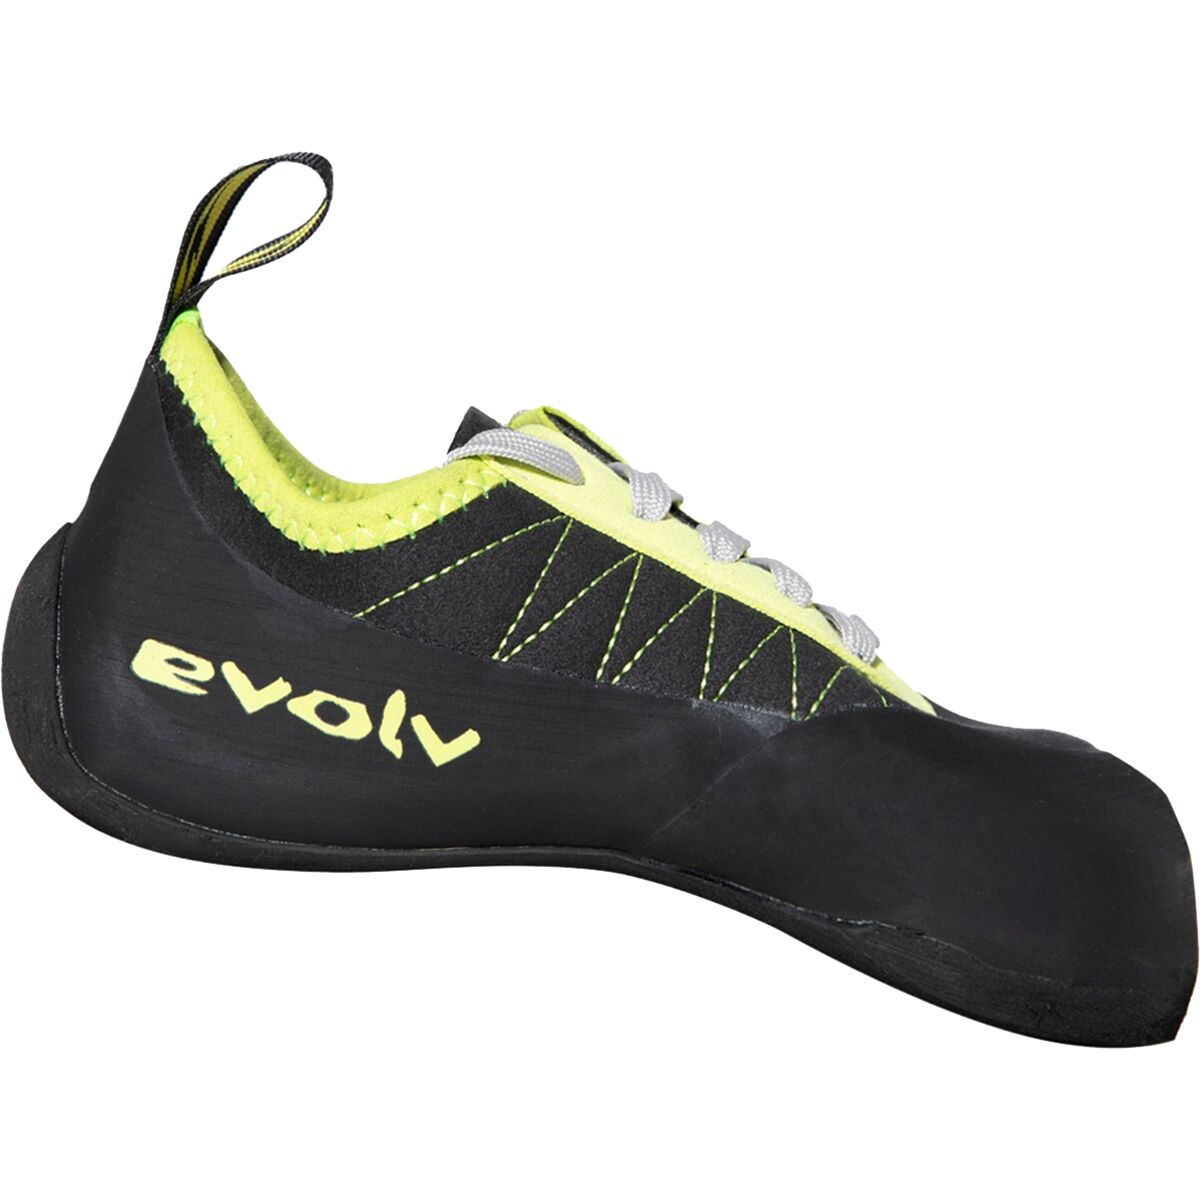 Evolv Eldo Z Adaptive Climbing Shoe